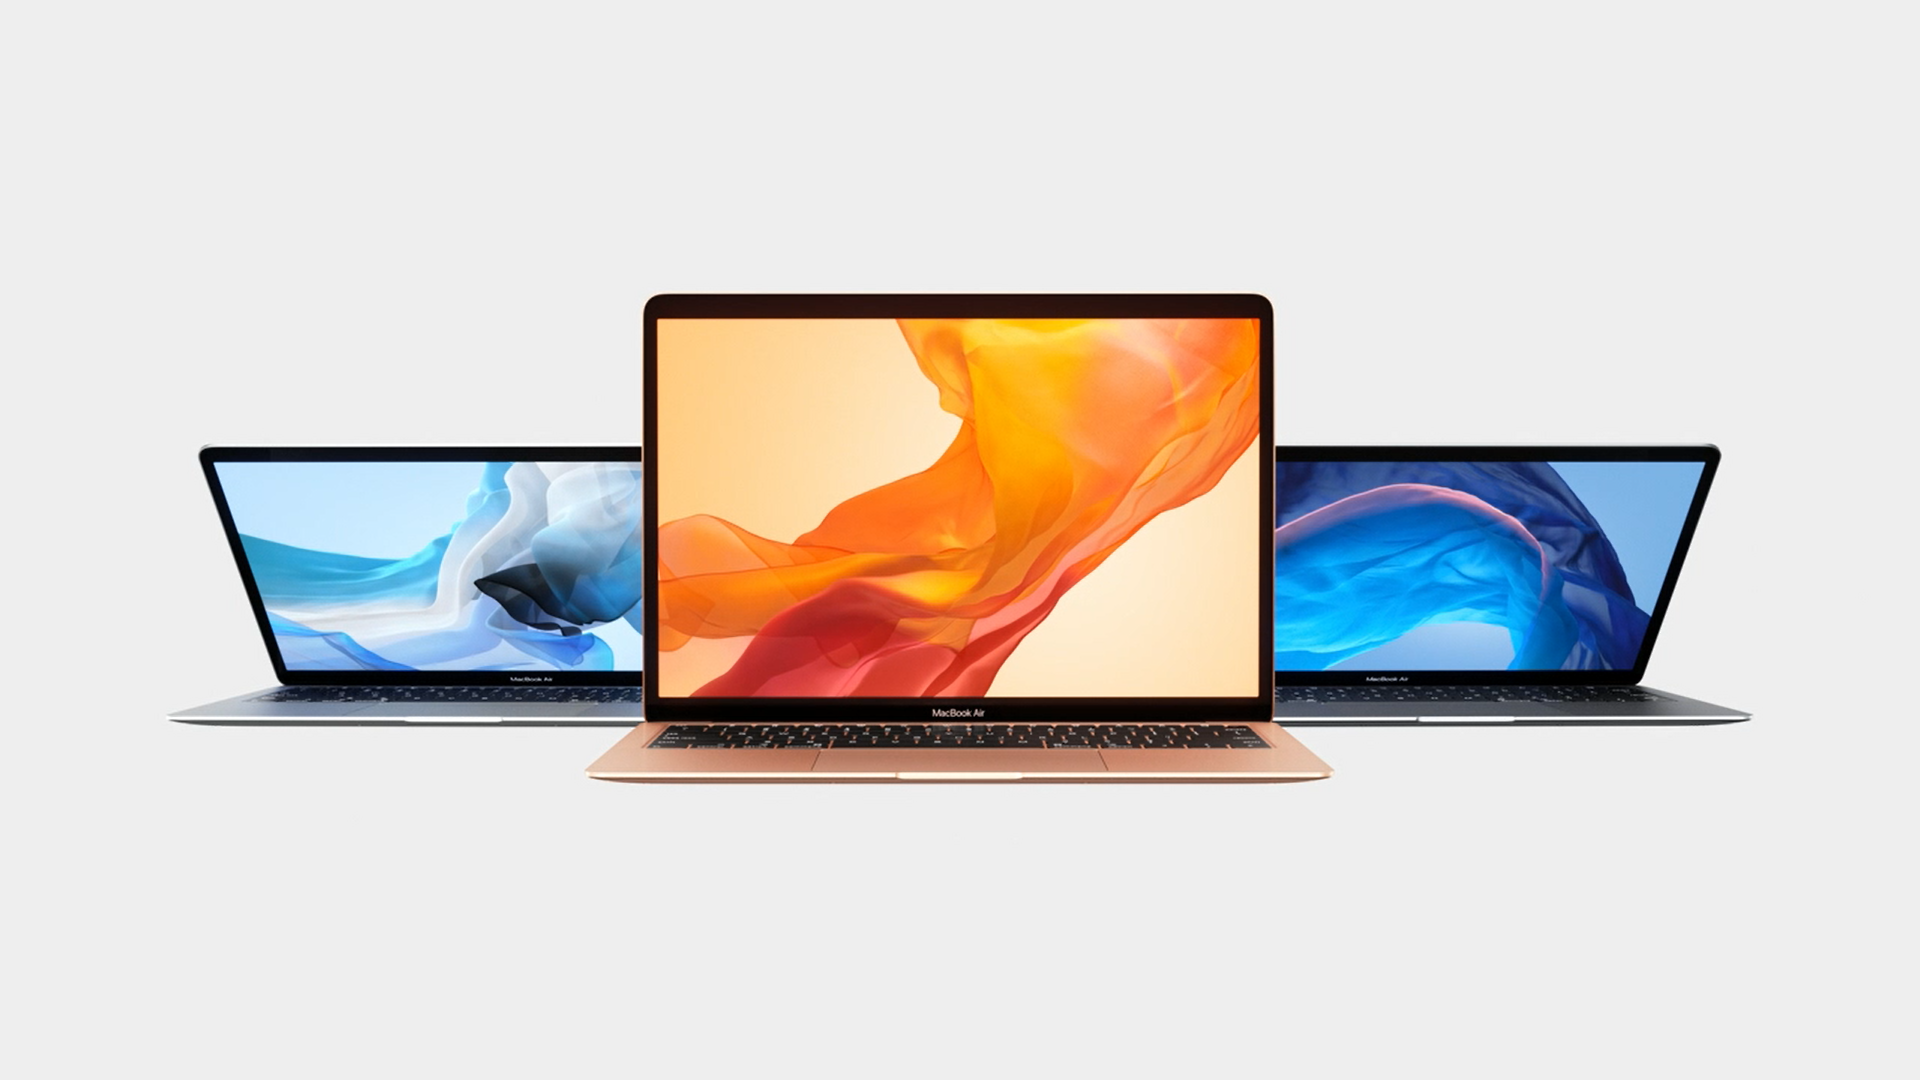 Konačno! Stiže novi MacBook Air. Njegova glavna novost je novi ekran od 13,3 inča, s manjim obrubima nego do sada. Stoga, površina je bolje iskorištena. Rezolucija je učetverostručena na 2560x1600, odnosno na 4 milijuna piksela. Unaprijeđene su i boje, stoga je kontrast osjetno boji. Na vrhu, iako su obrubi oko ekrana tanki, stala je i Face Time kamera. 